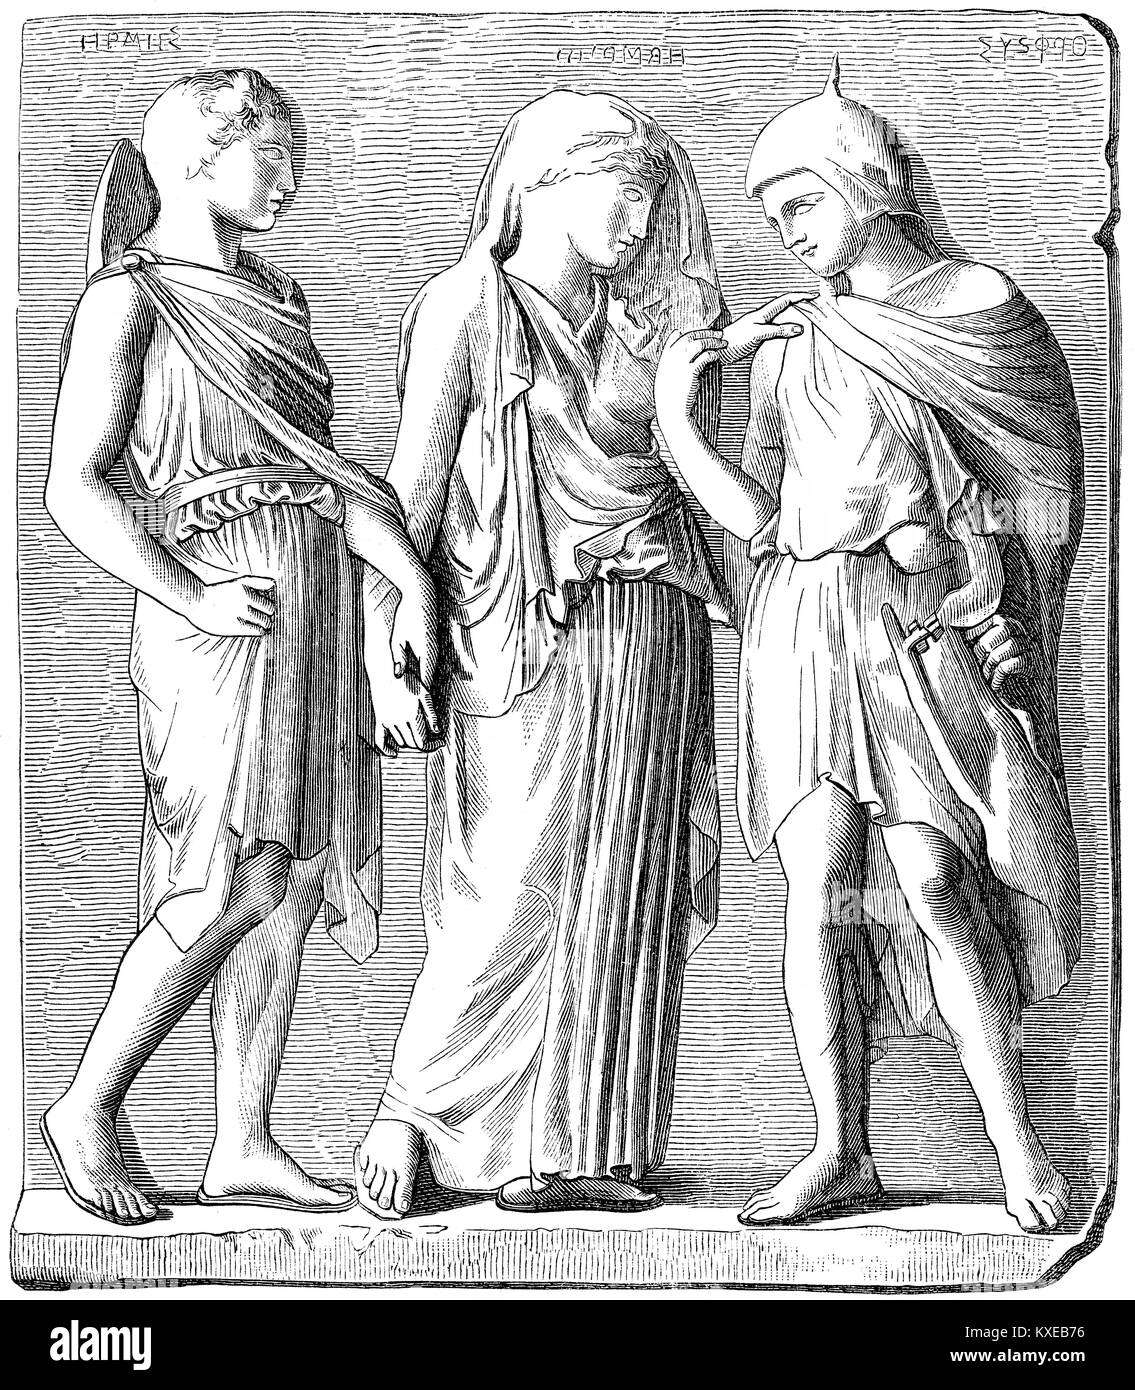 Hermes, Eurydice and Orpheus, Greek mythology Stock Photo - Alamy